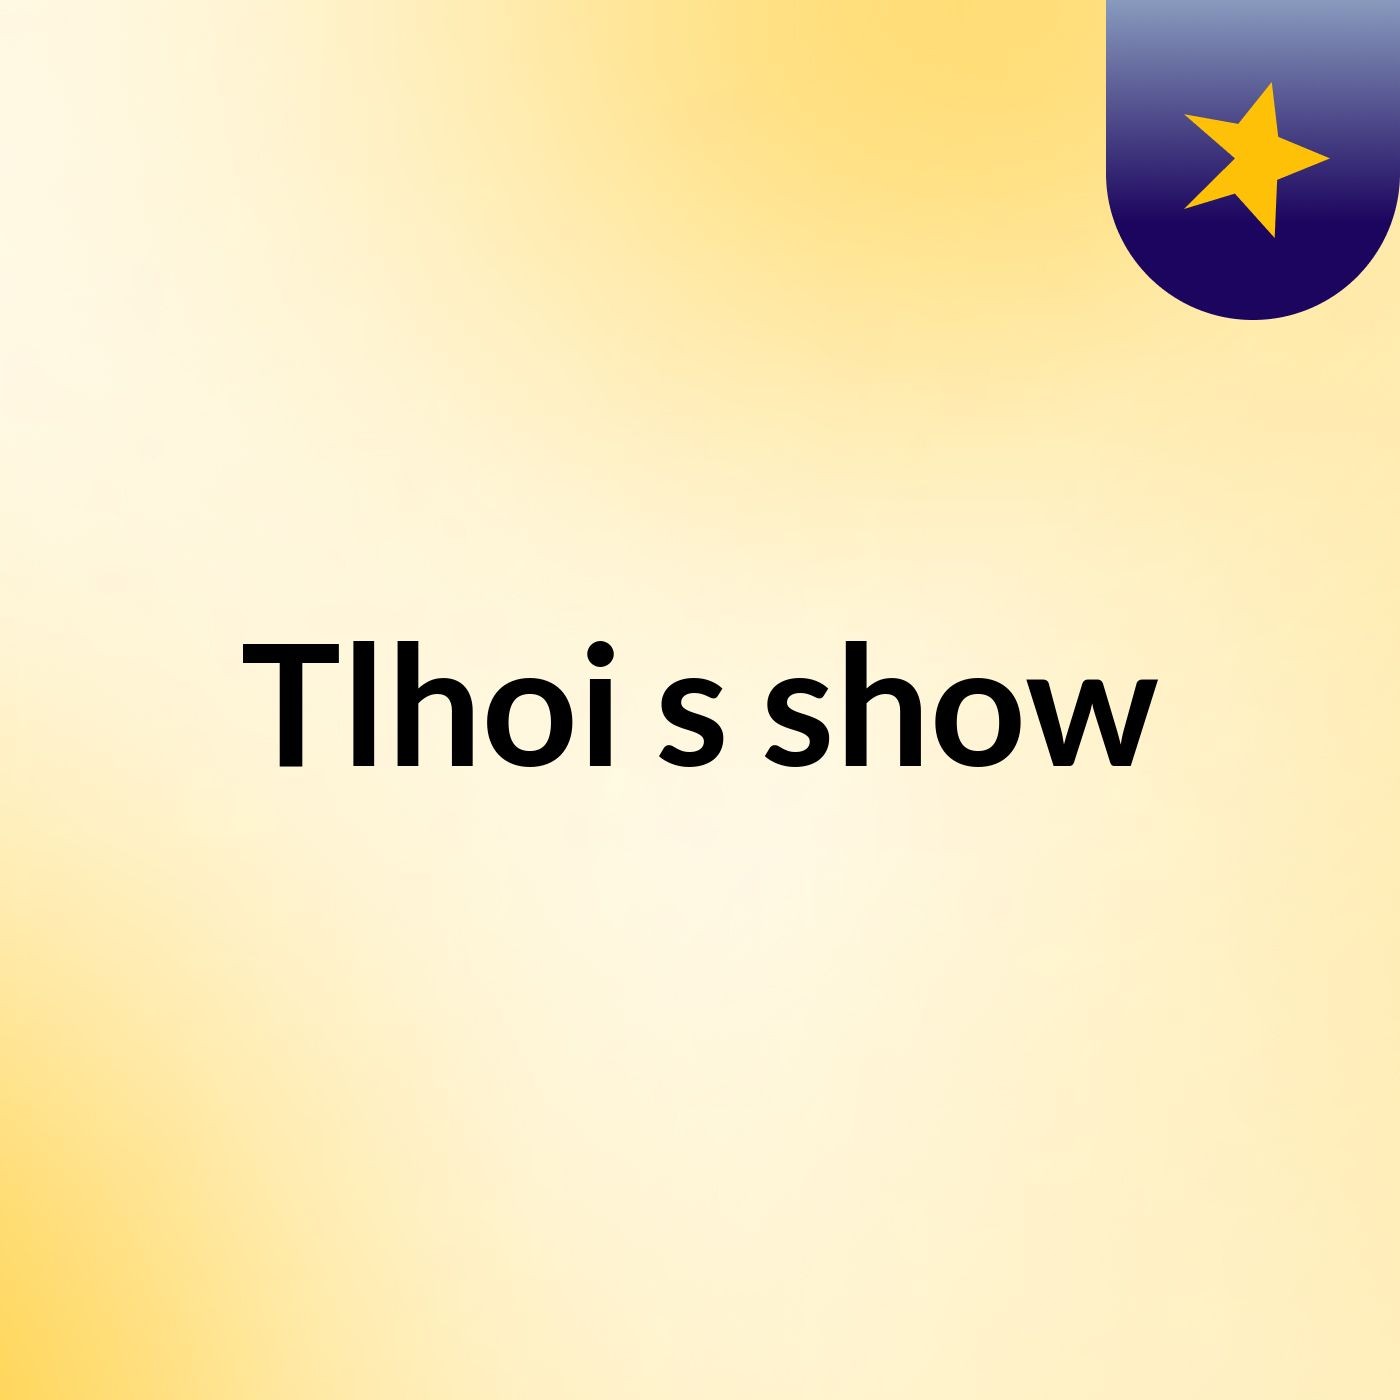 Tlhoi's show